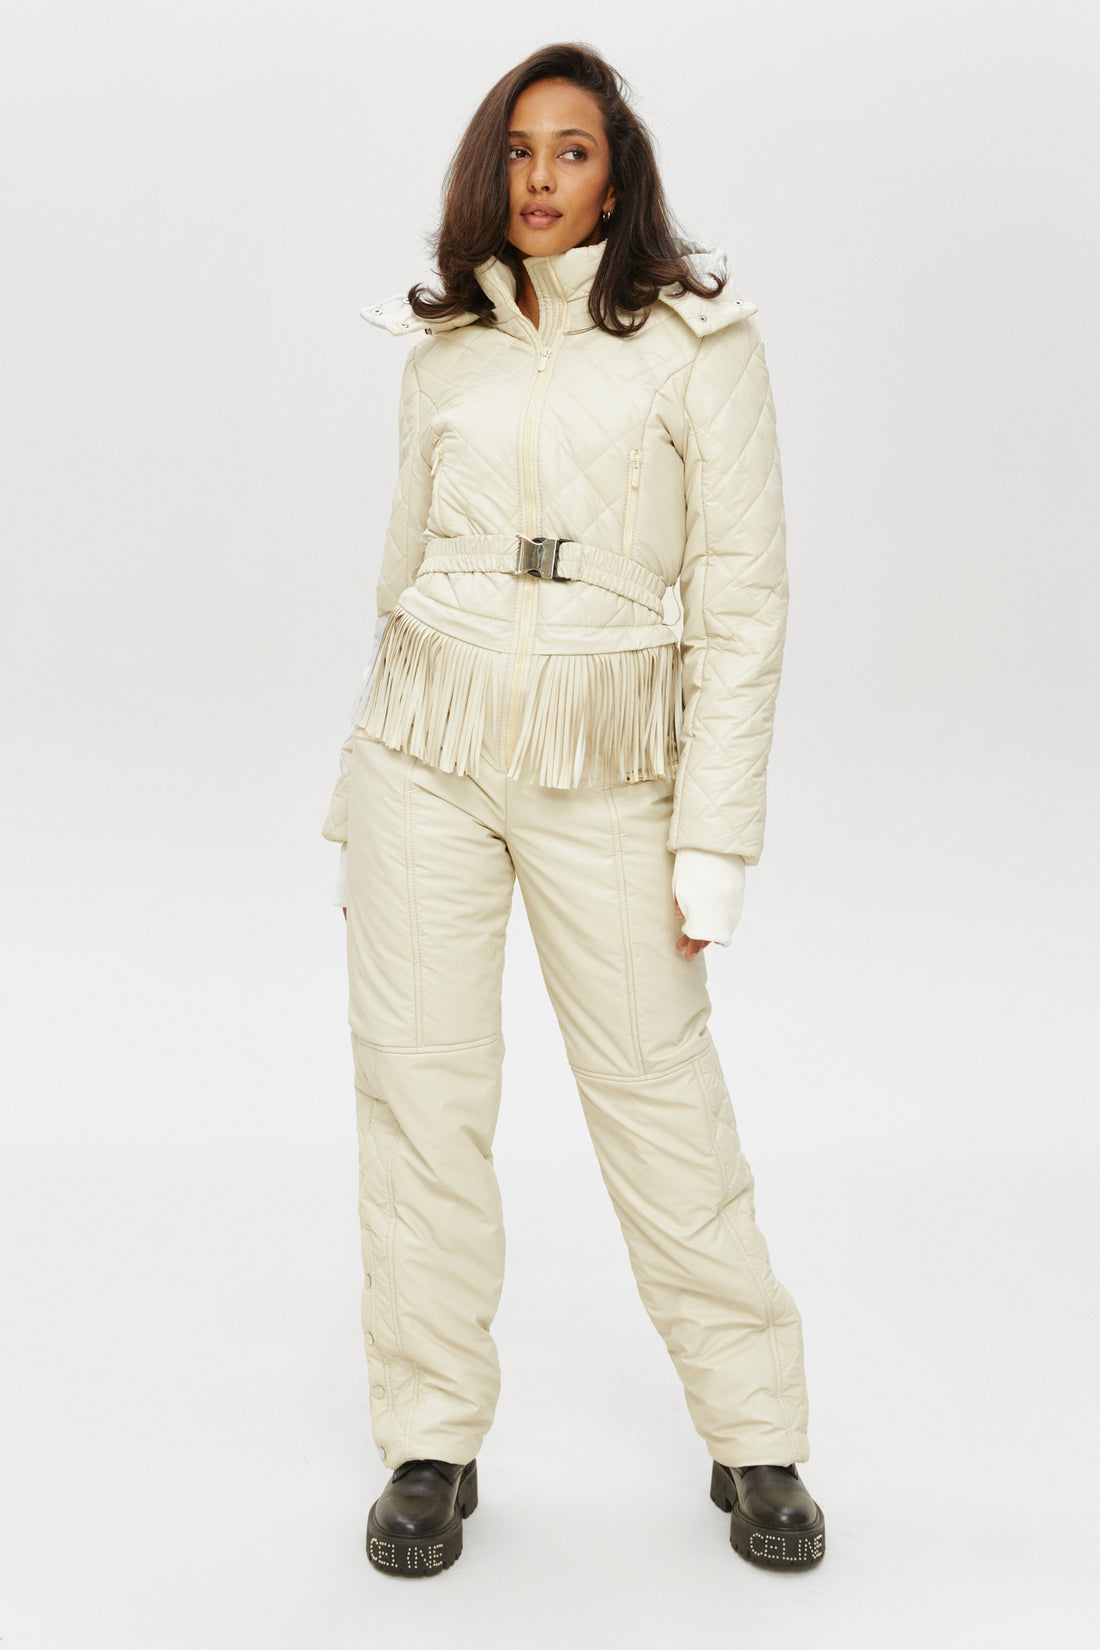 Ivory skisuit LOGAN - Ivory fringe - Stylish ski clothing women's for ski vacation outfits